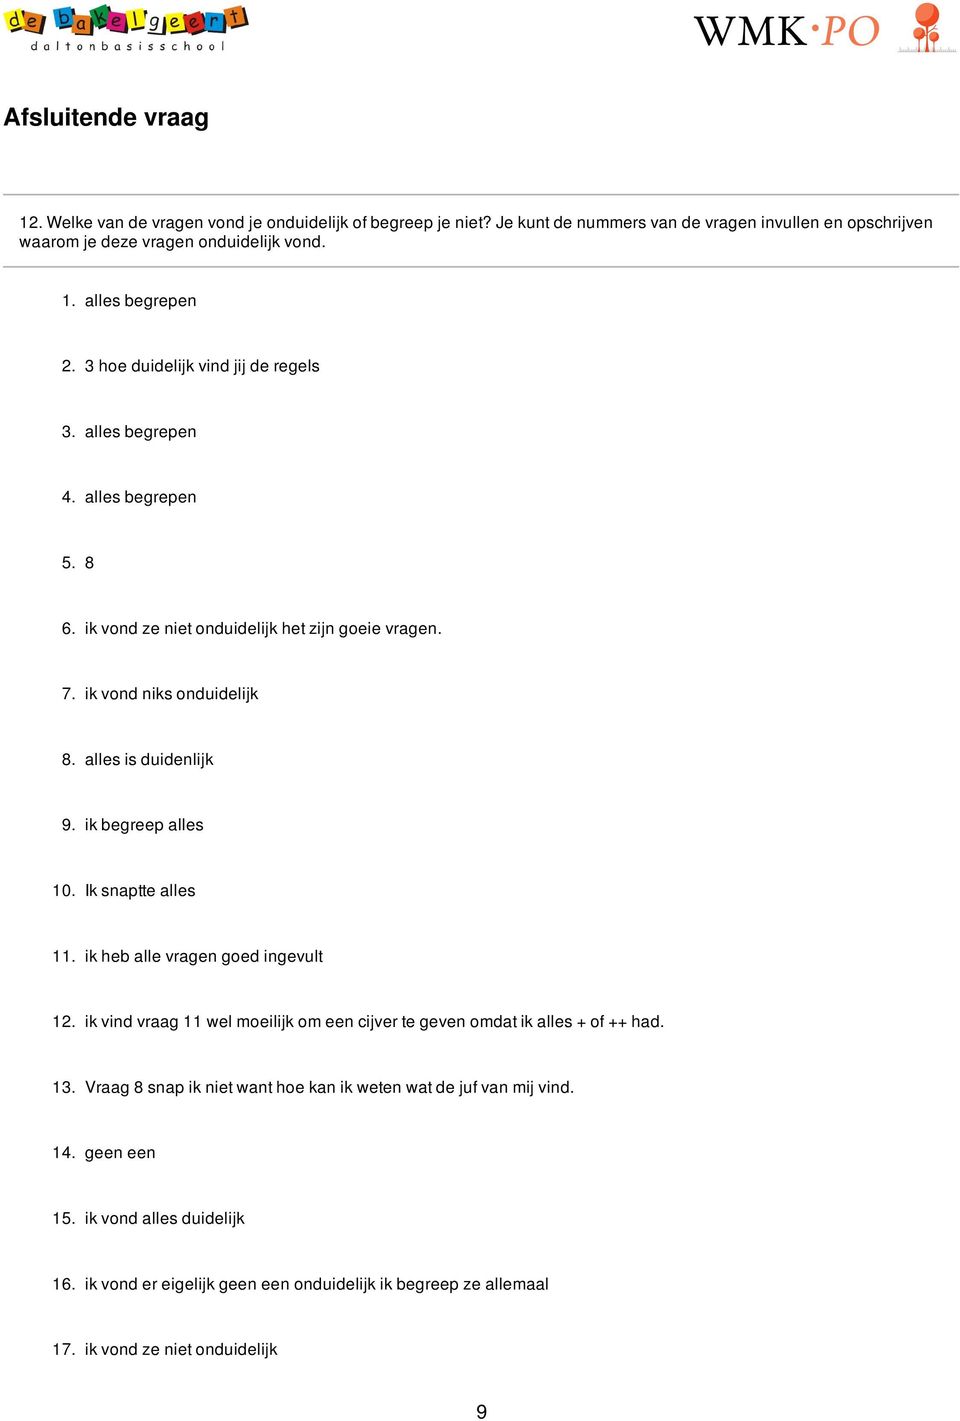 ik begreep alles 10. Ik snaptte alles 11. ik heb alle vragen goed ingevult 12. ik vind vraag 11 wel moeilijk om een cijver te geven omdat ik alles + of ++ had. 13.